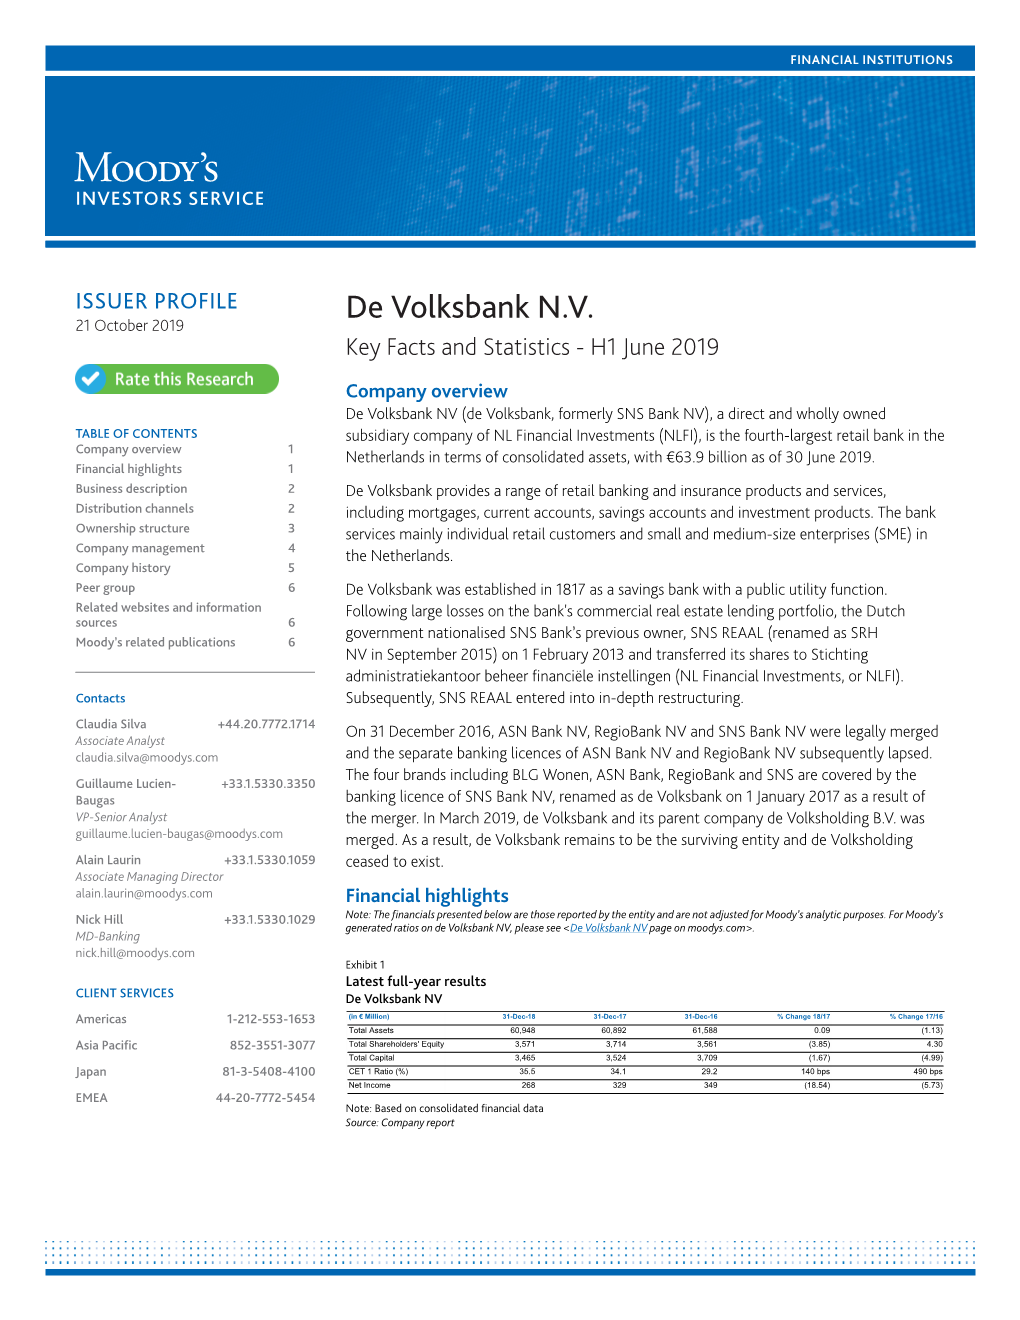 Company Profile De Volksbank